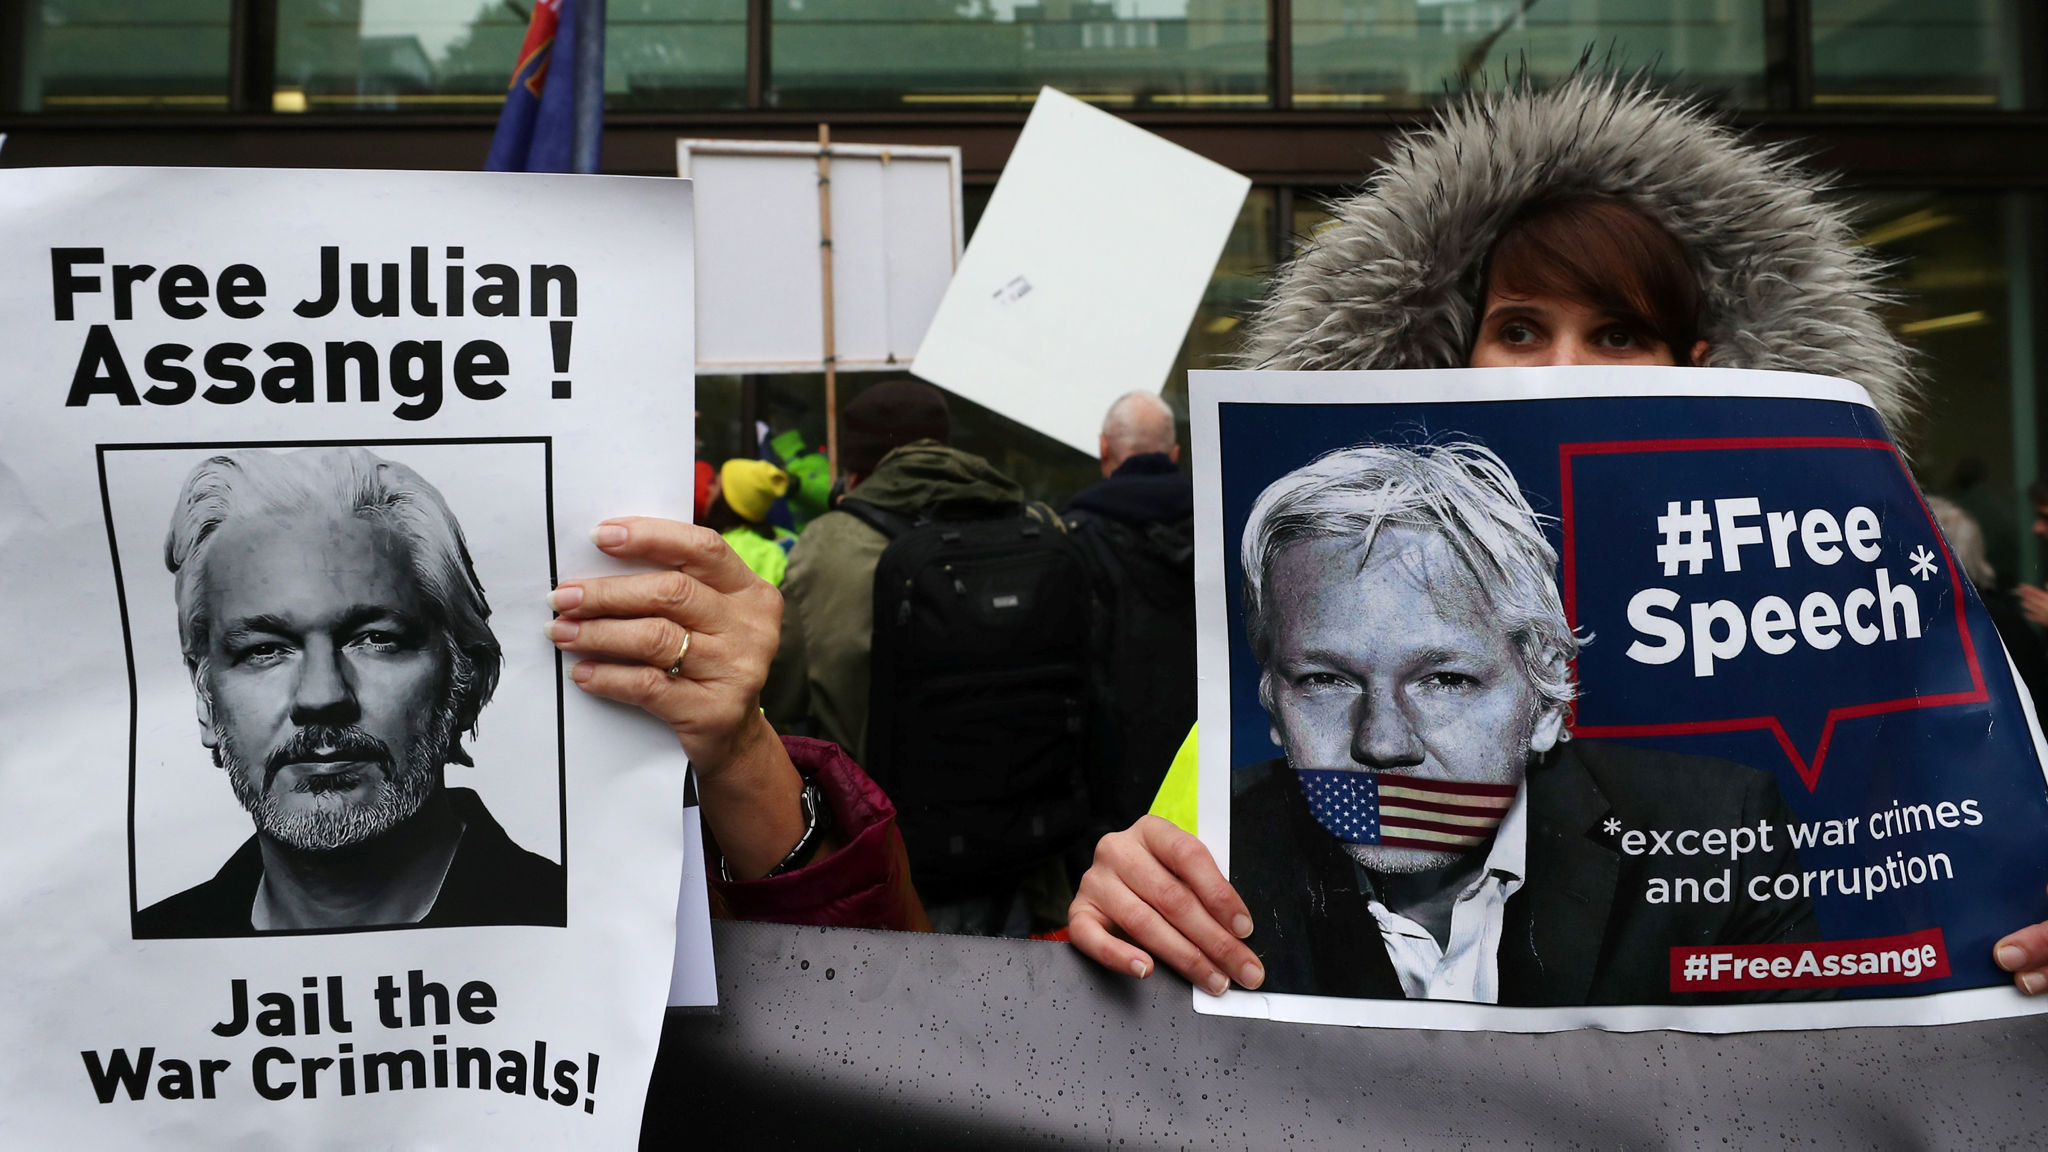 El jefe de derechos humanos de la ONU expresa su preocupación por el caso de extradición de Assange, Wikileaks continúa recaudando grandes sumas de criptomonedas